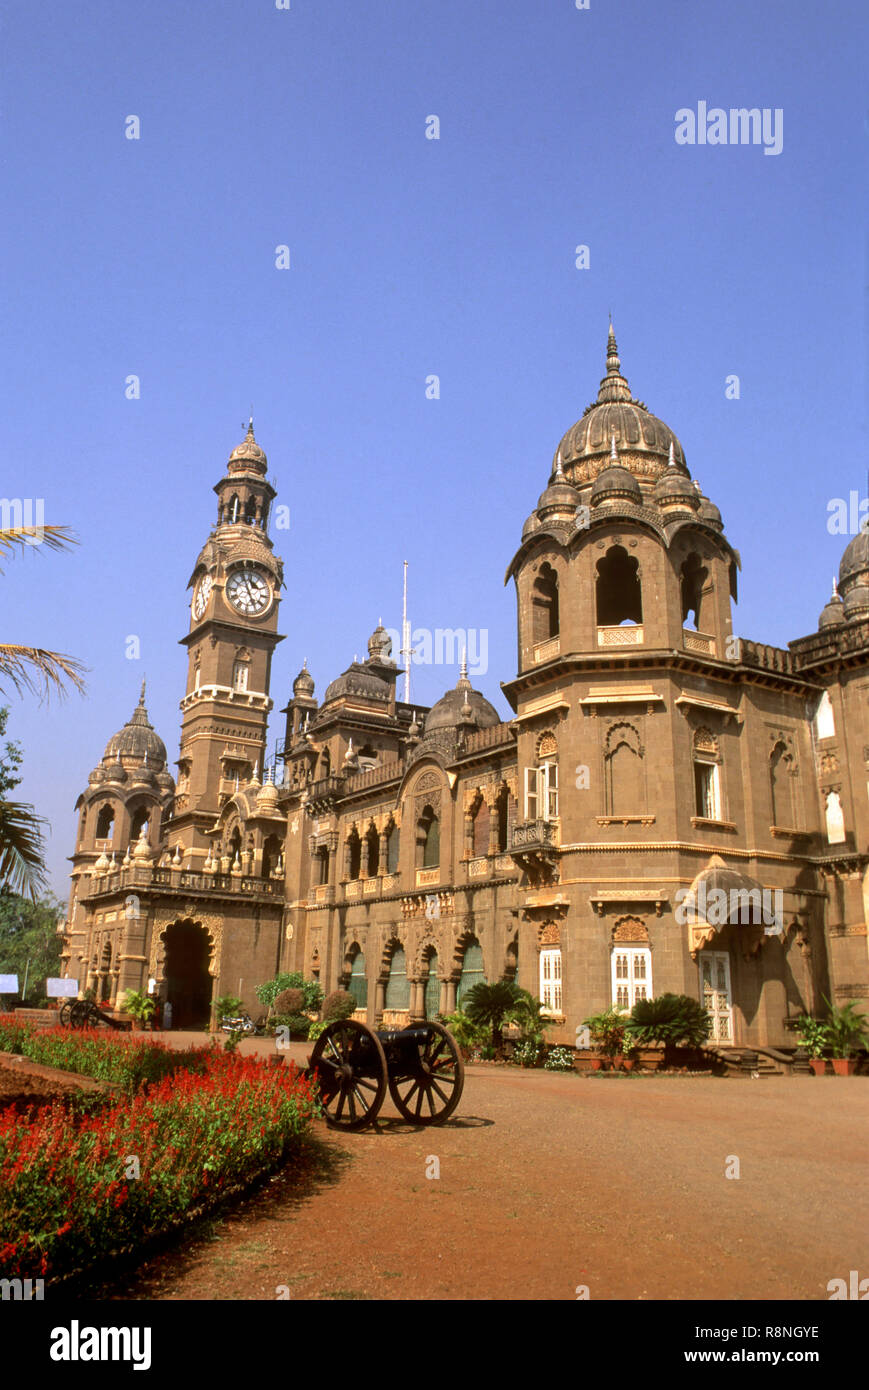 New palace at Maharaja built in 1877 to 1884, kolhapur, maharashtra, india Stock Photo